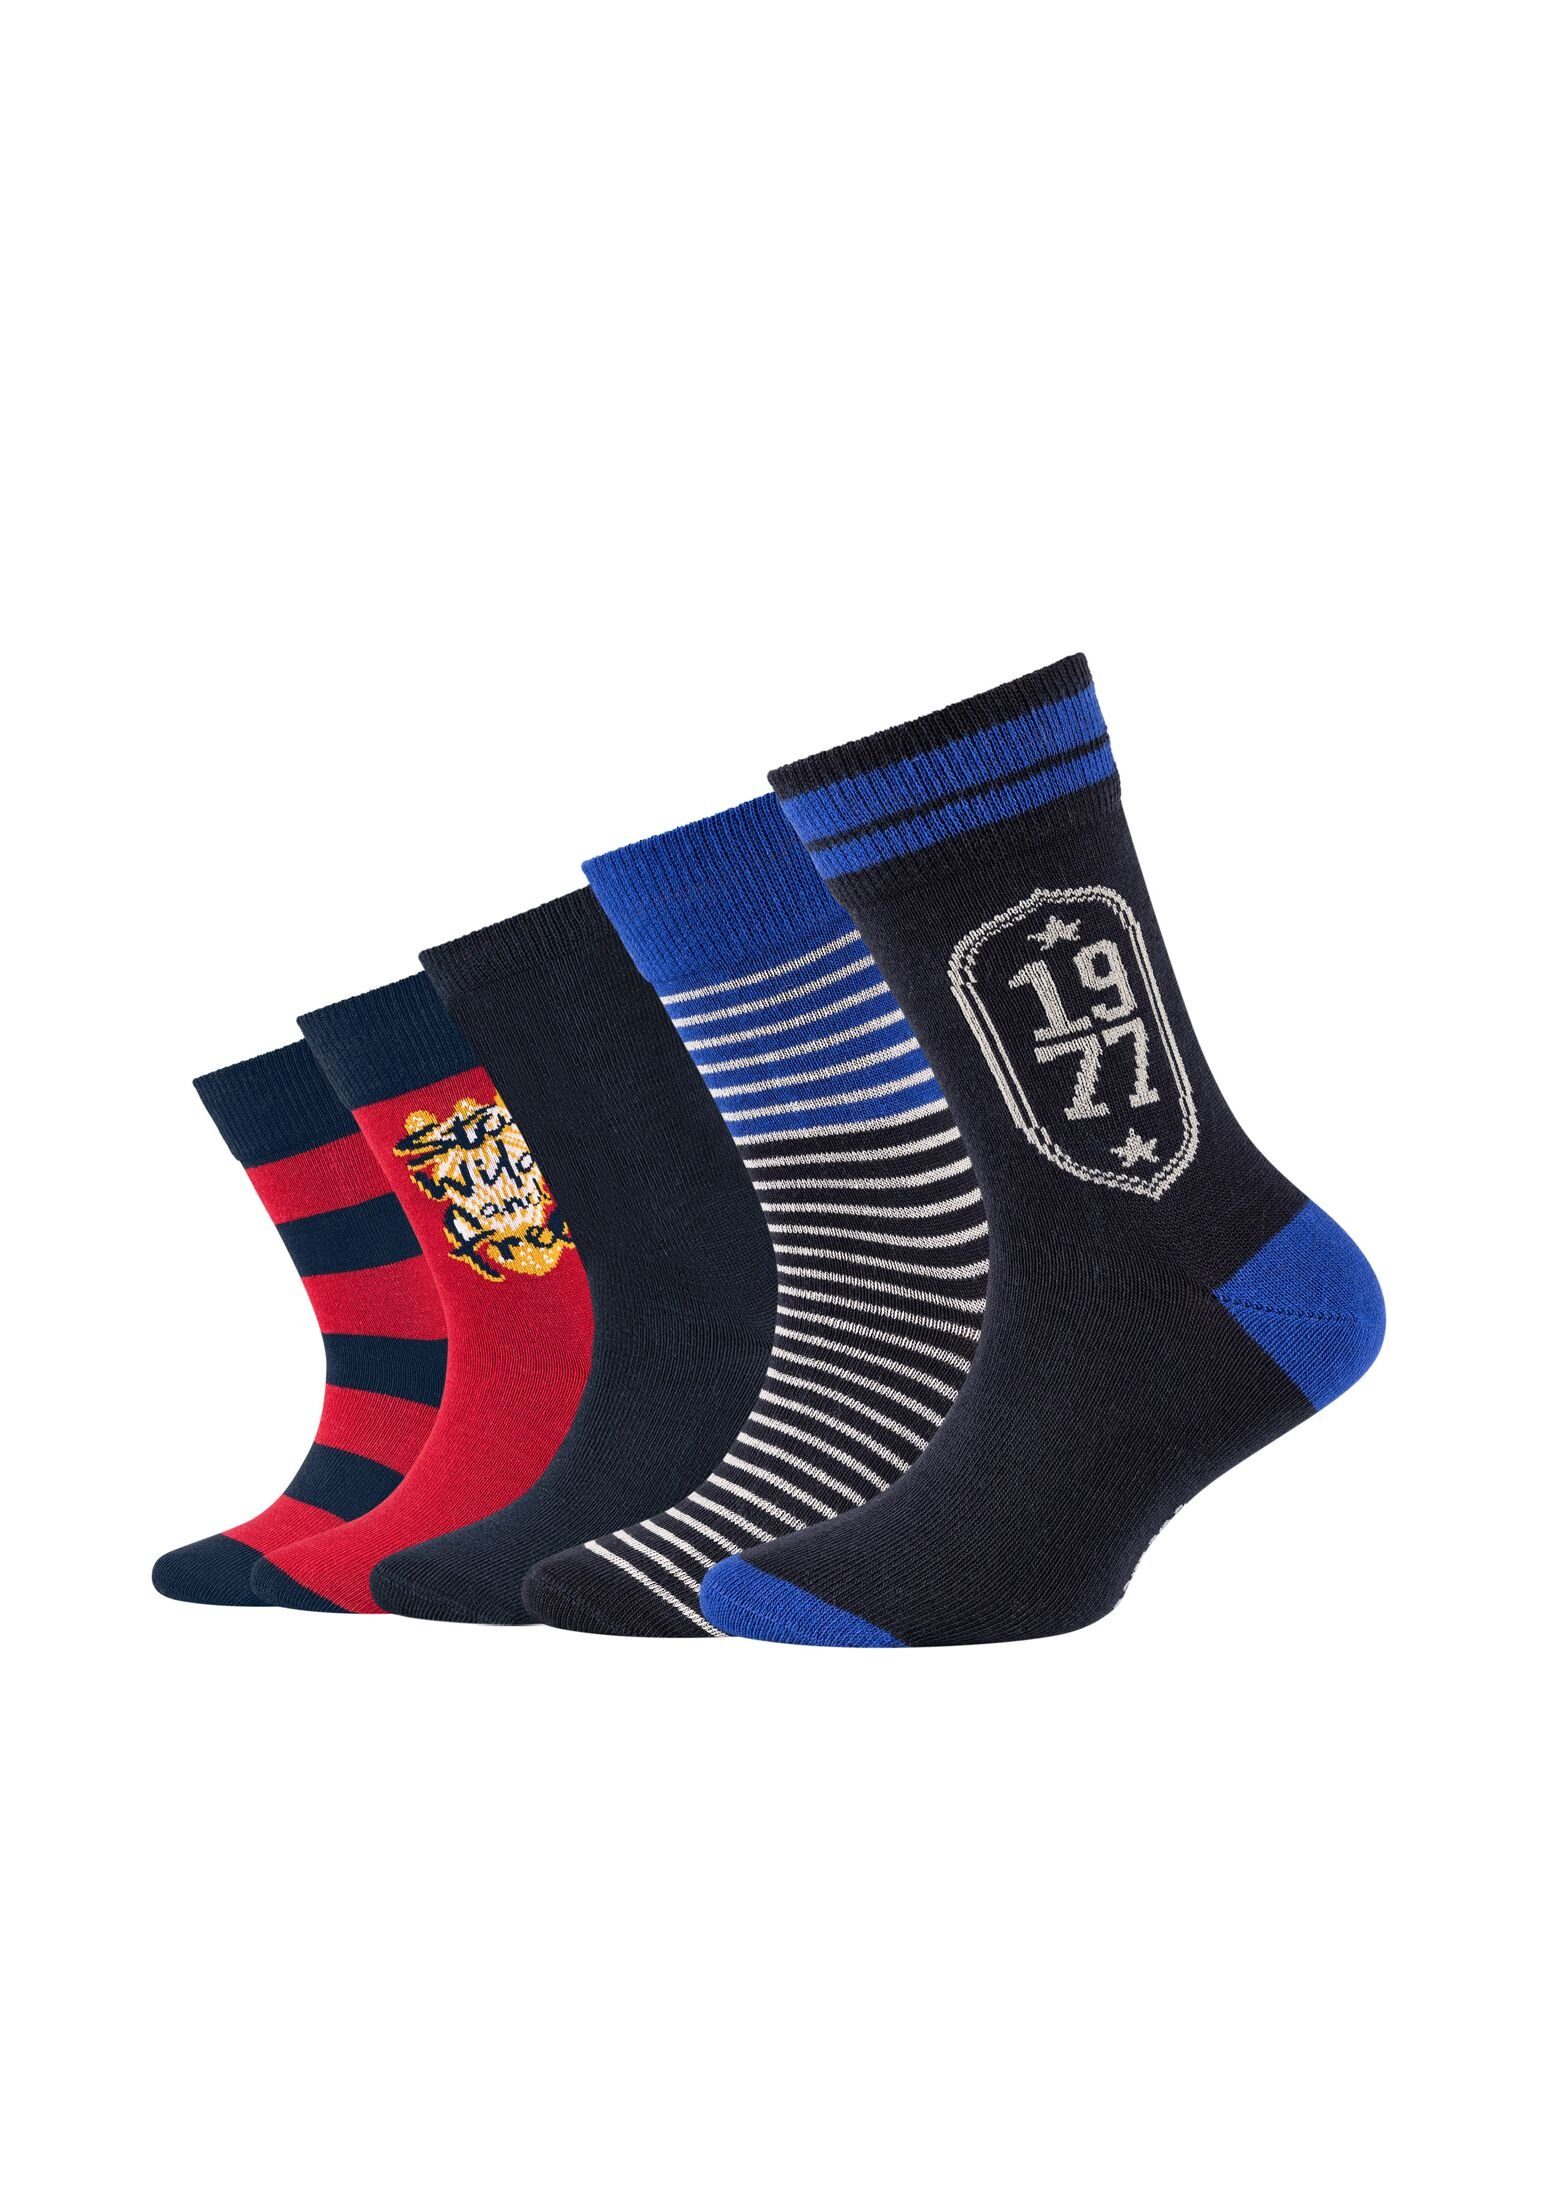 Camano Pack 5er Socken navy Socken